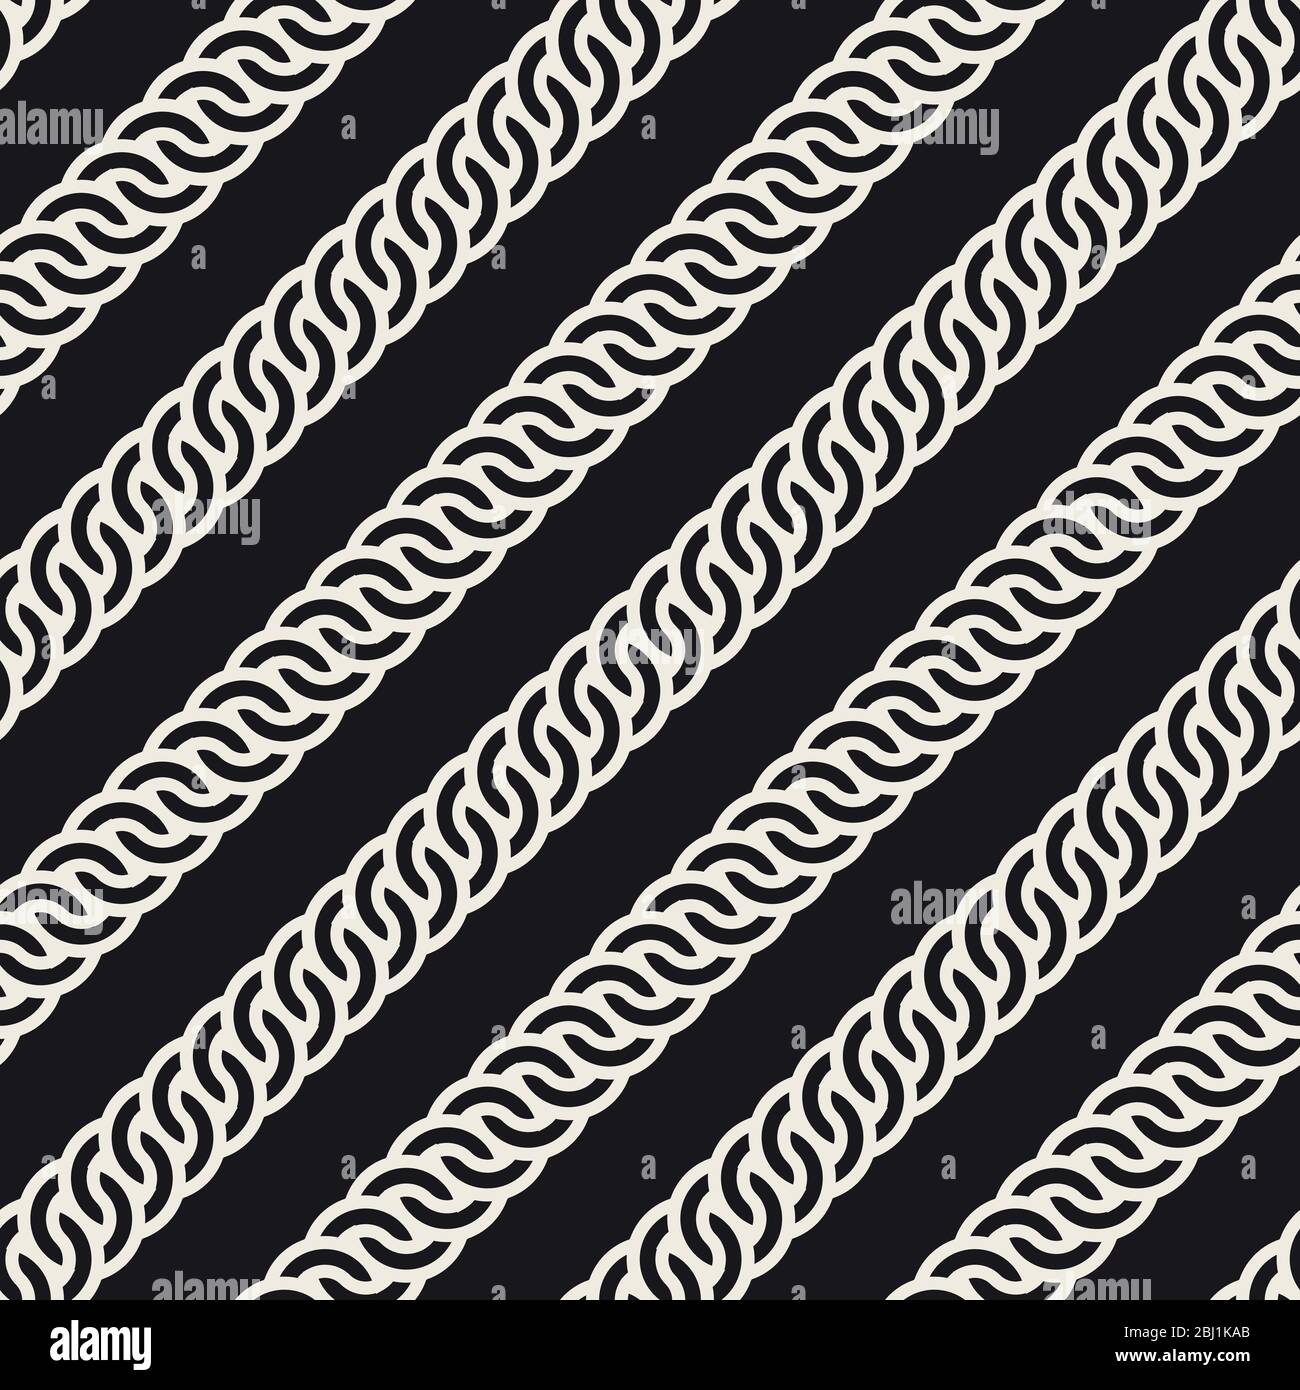 Vektor nahtlose abgerundete Interlacing Linien Muster. Stilvolle abstrakte Textur. Wiederholtes geometrisches Streifenmuster Stock Vektor